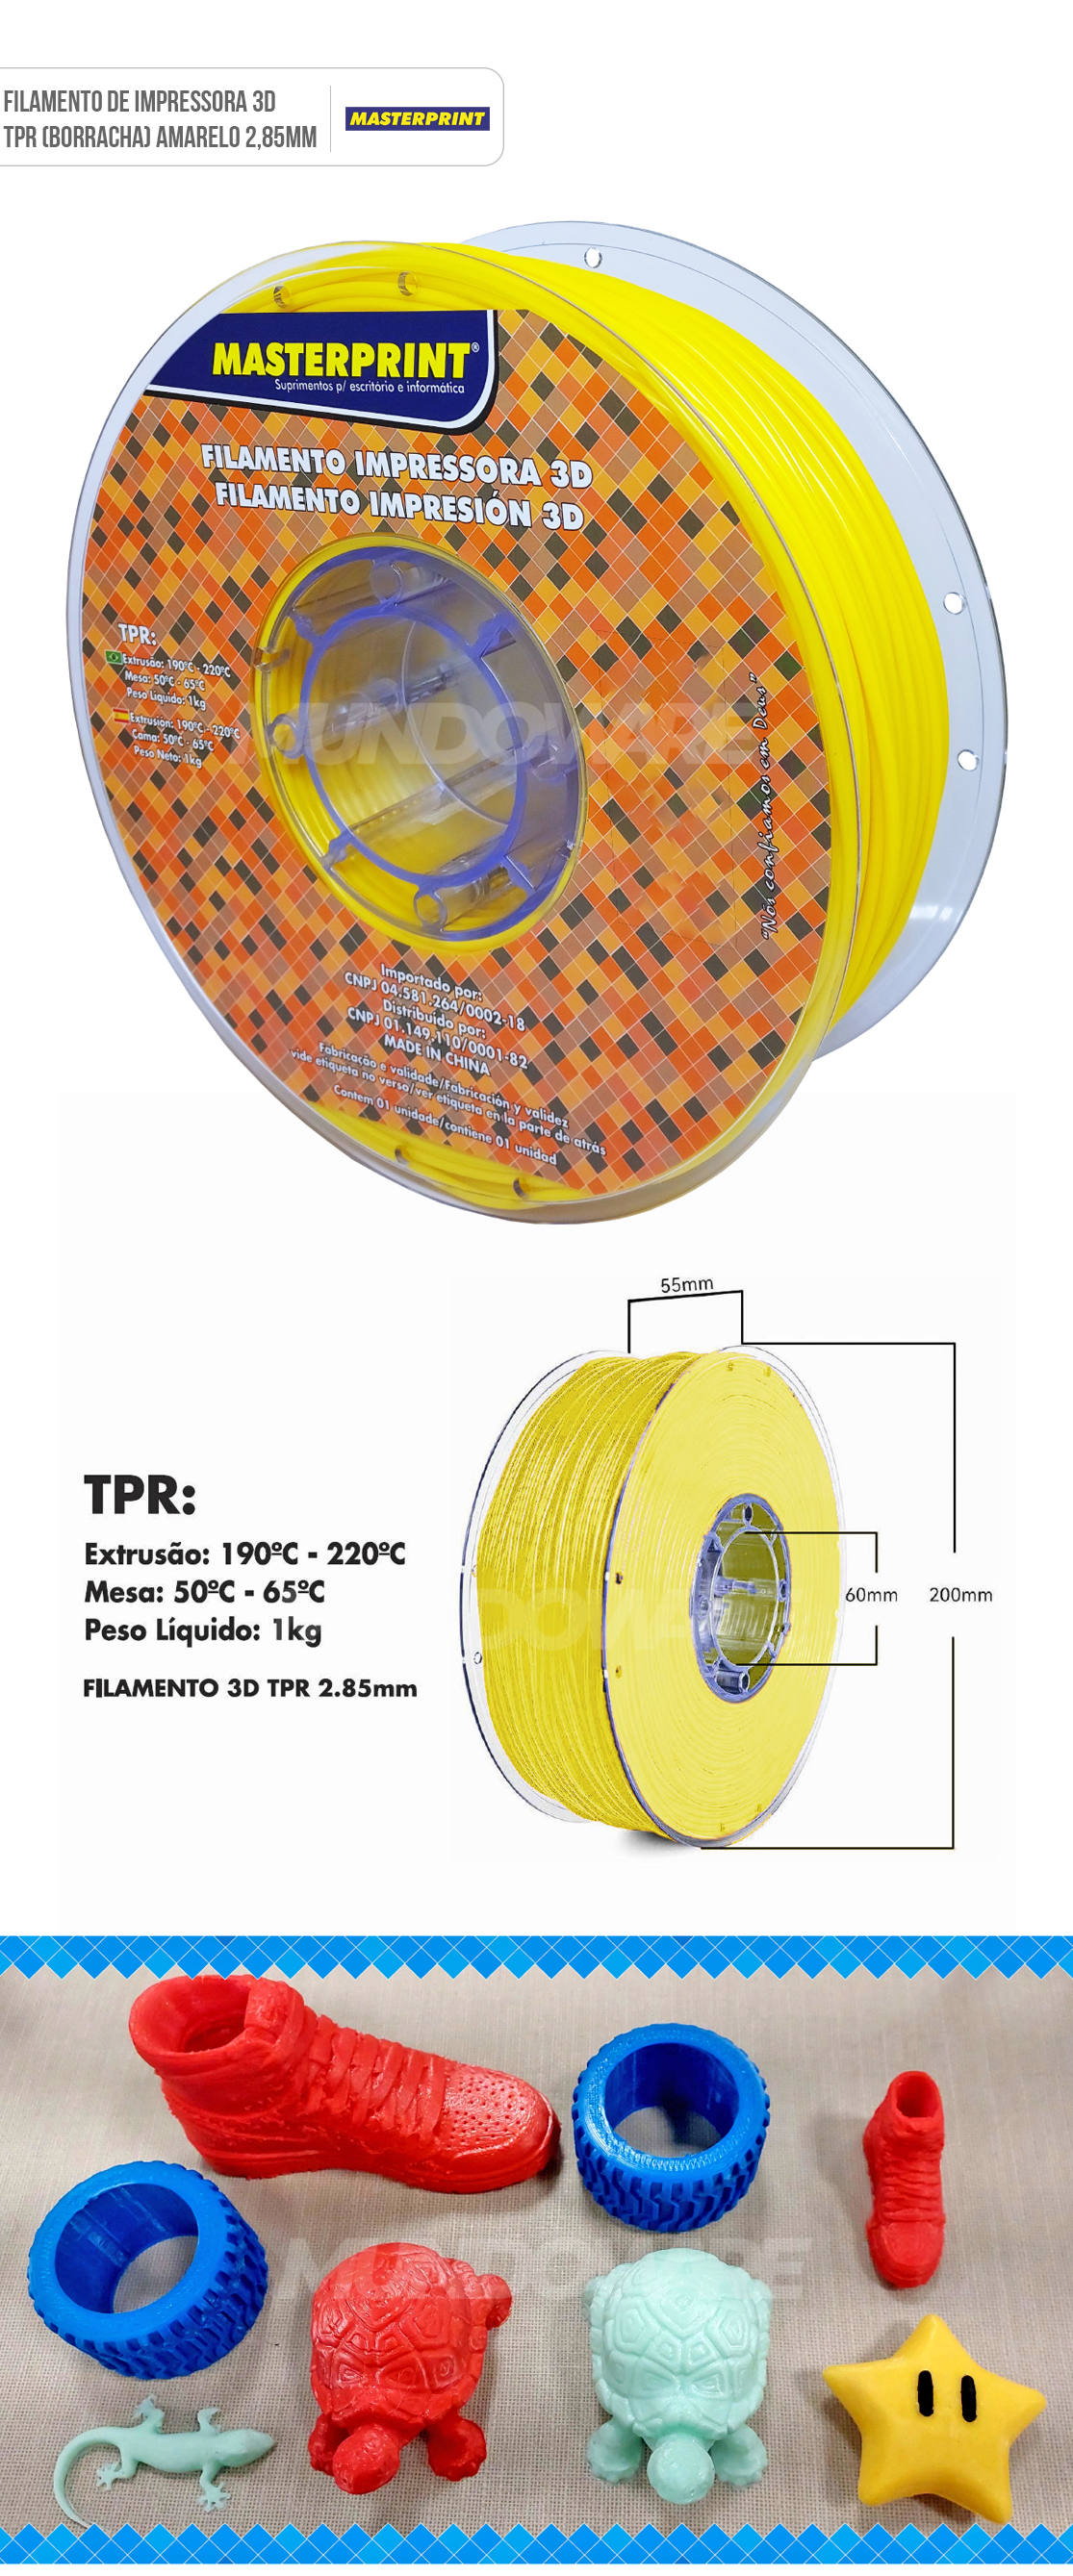 Filamento 3D TPR (Borracha) Amarelo para Impressora 3D com Extrusora de 2.85mm Rolo de 1Kg Masterprint